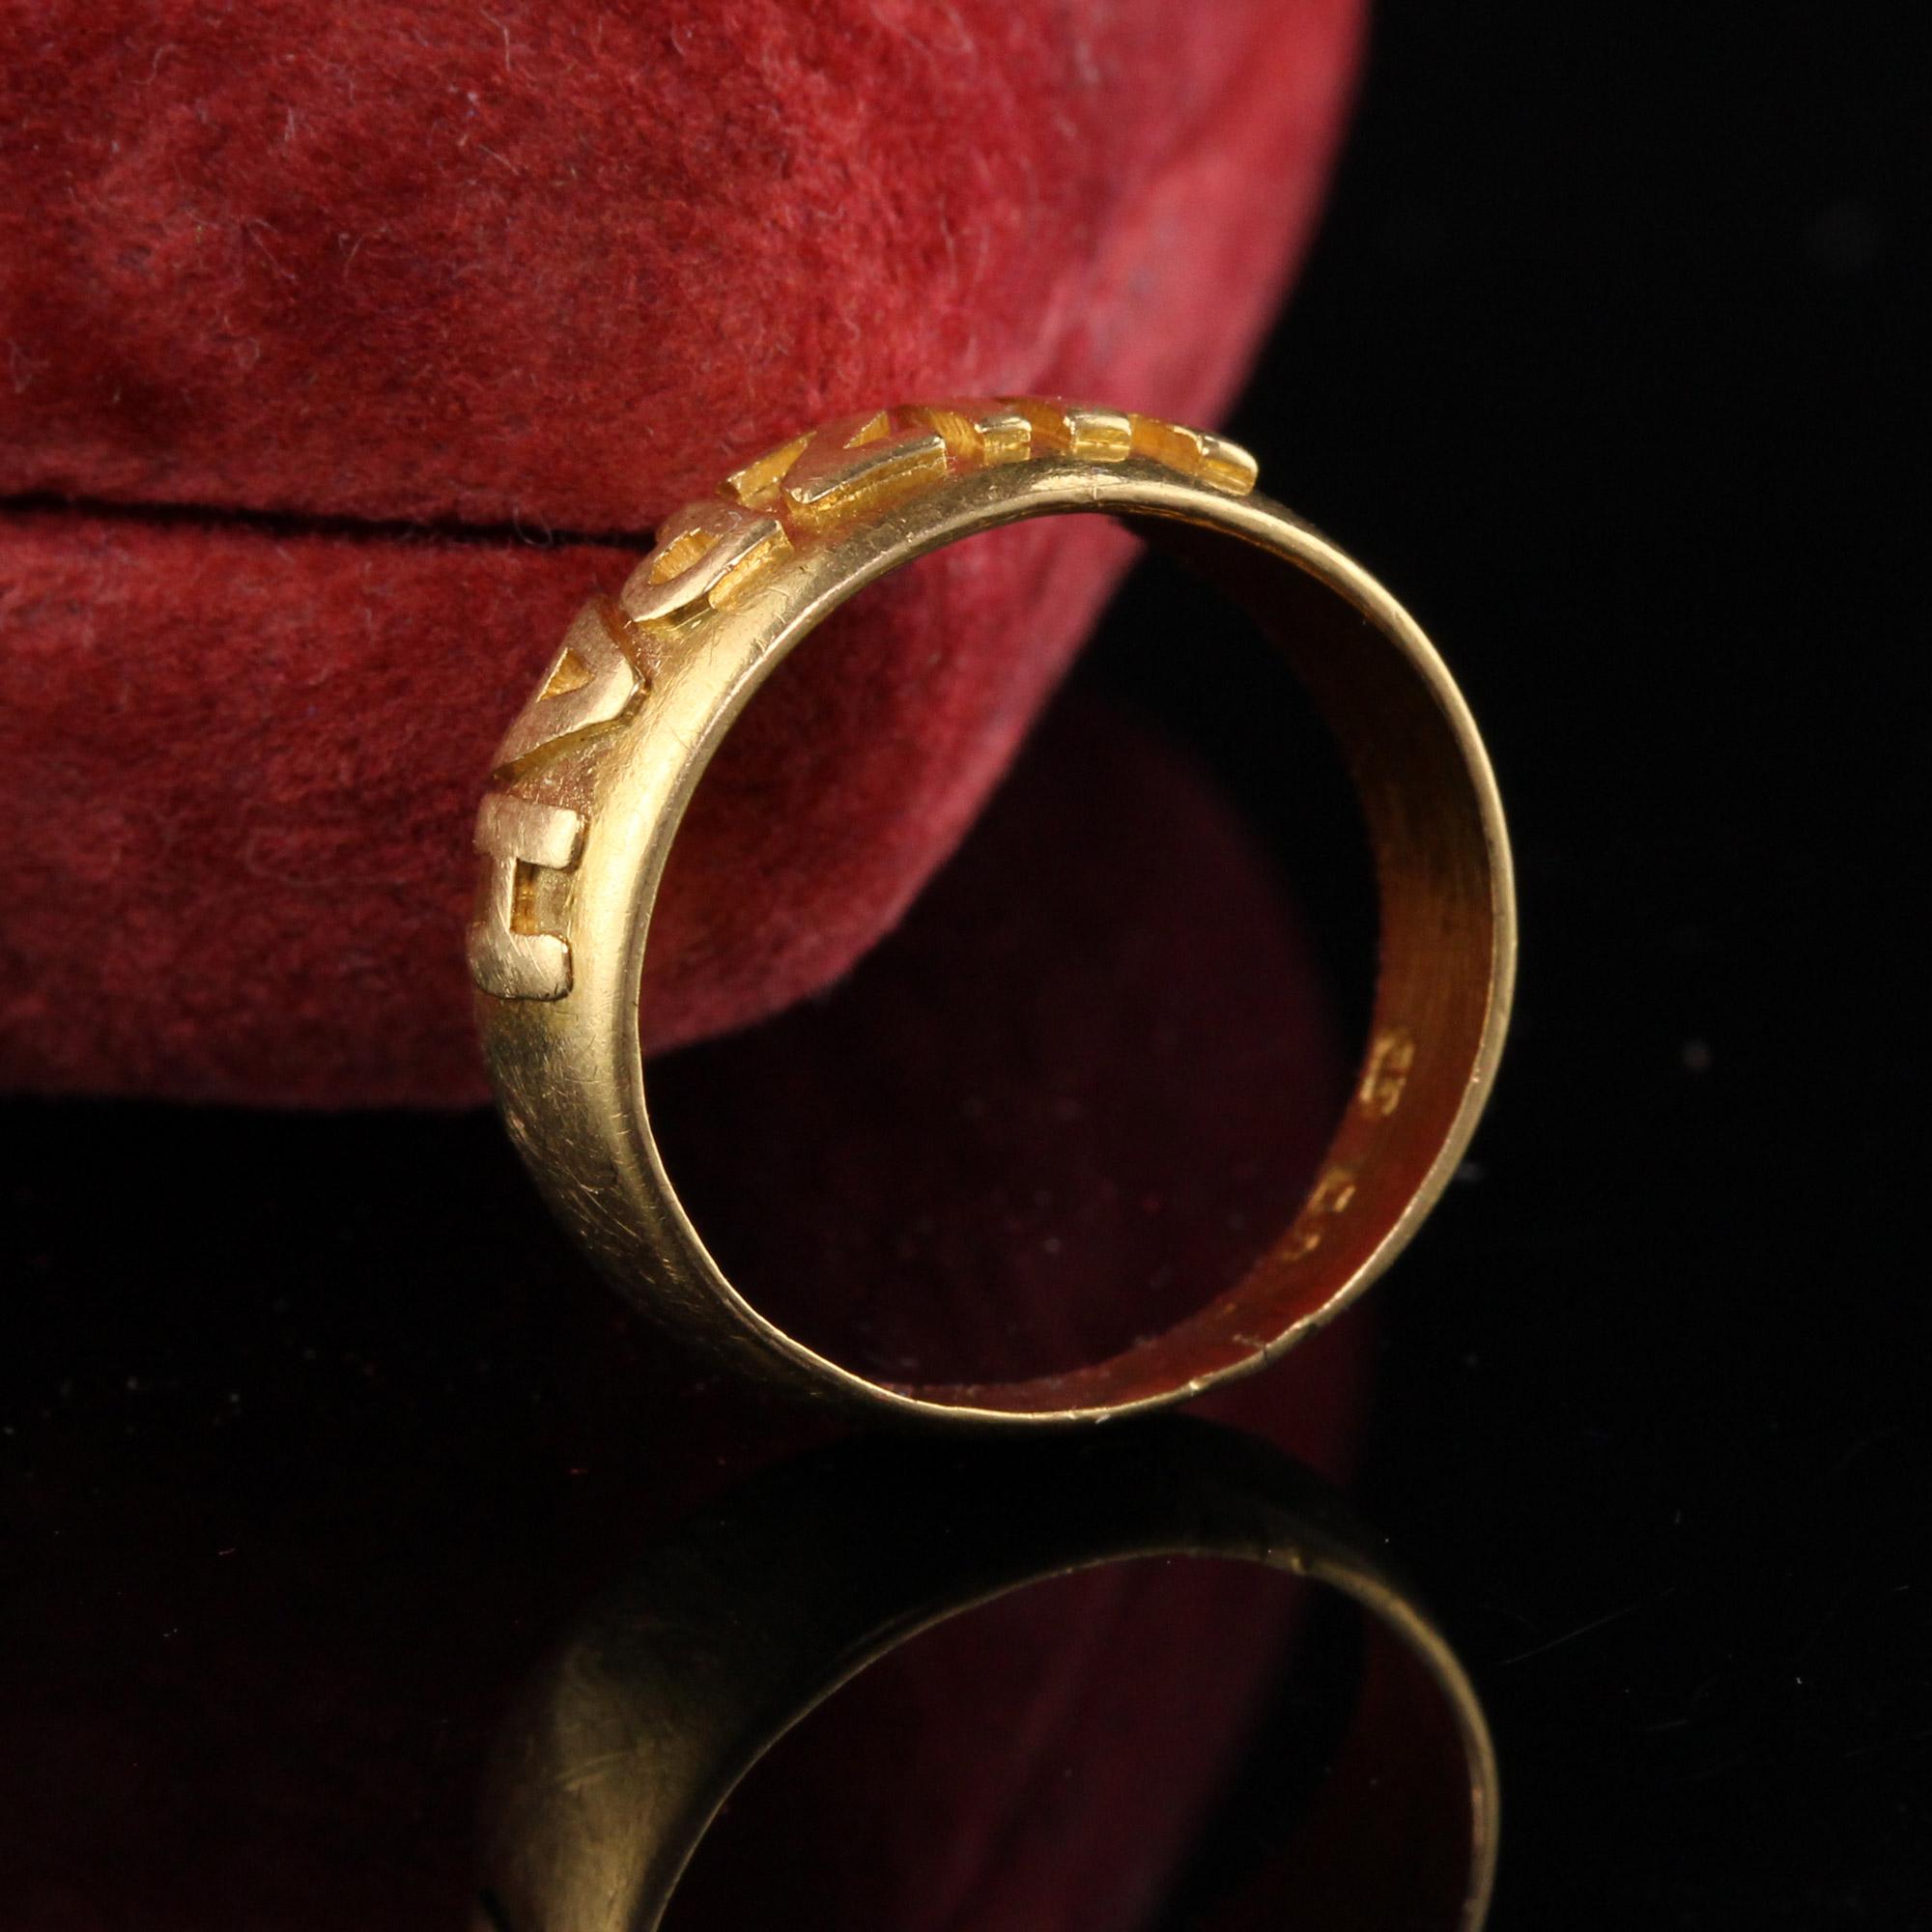 Schöne antike viktorianische Englisch 18K Gelbgold Mizpah Ring - CIRCA 1886. Dieser unglaubliche Ring ist aus 18-karätigem Gold gefertigt und stammt aus dem Jahr 1886, wie die Punzierungen zeigen. Auf der Innenseite des Rings ist außerdem 